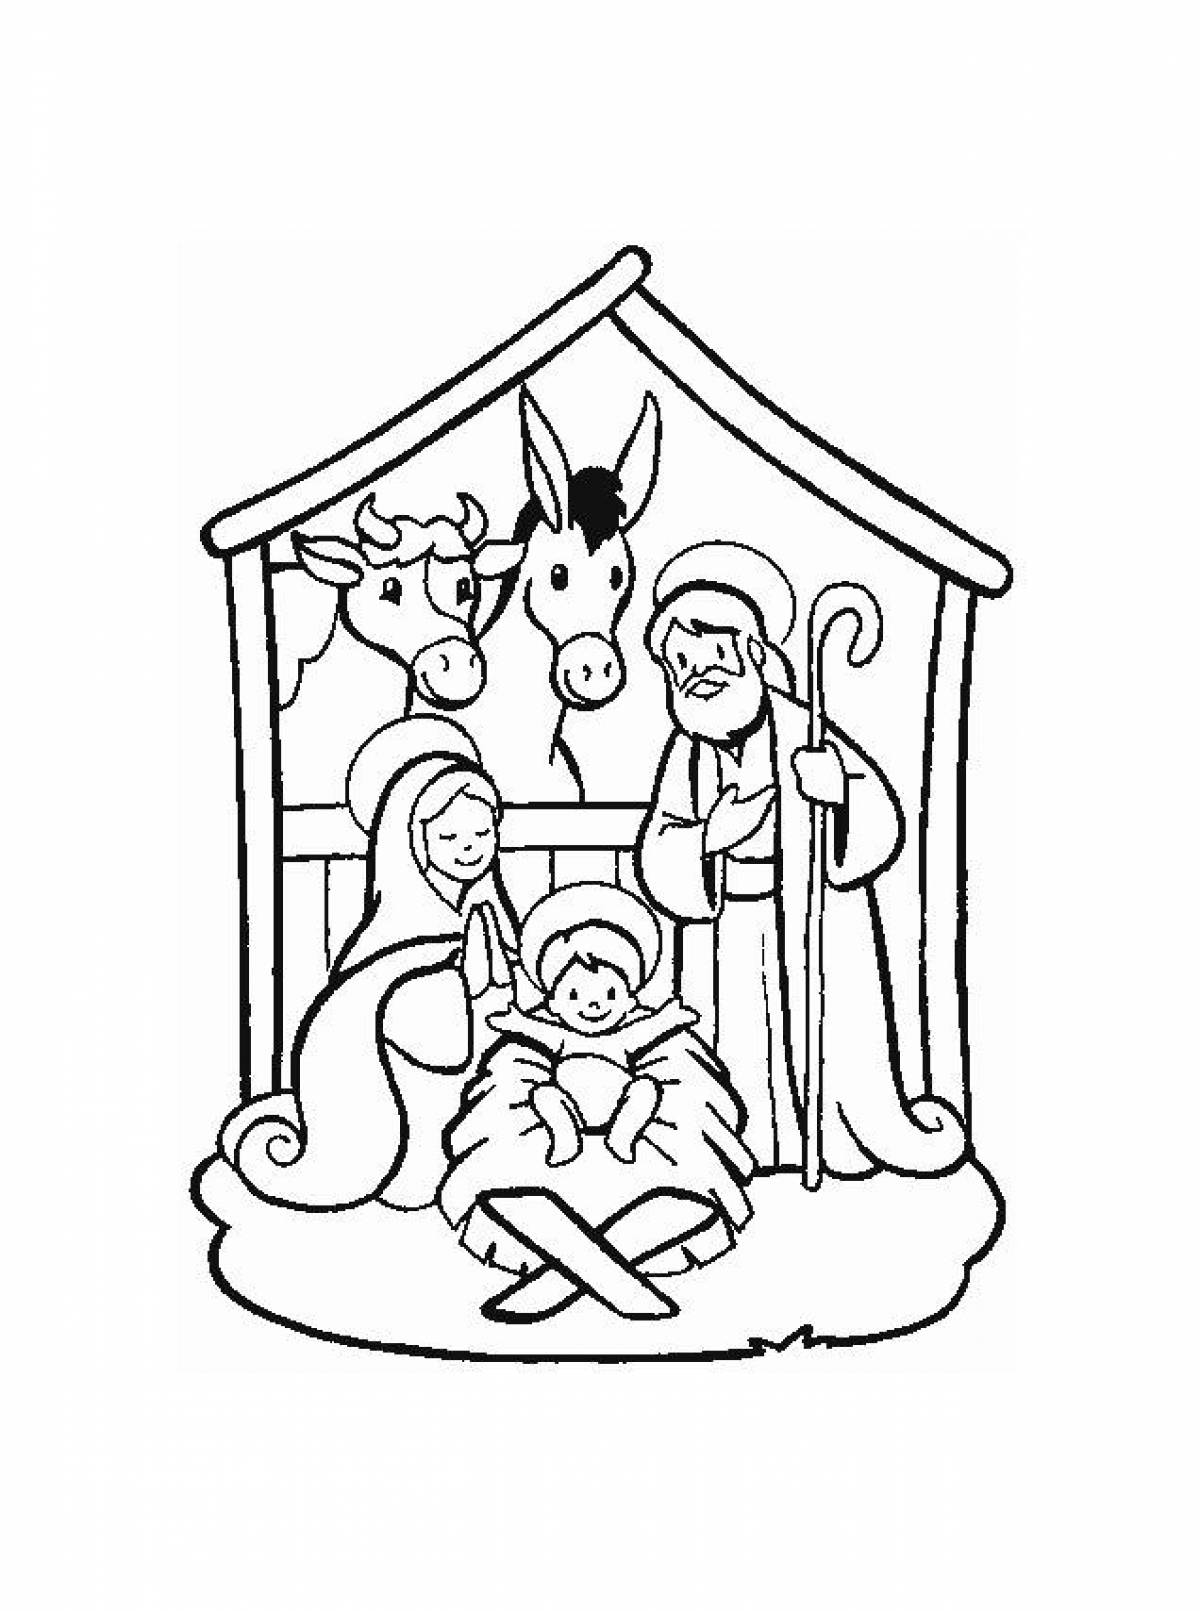 Royal nativity scene